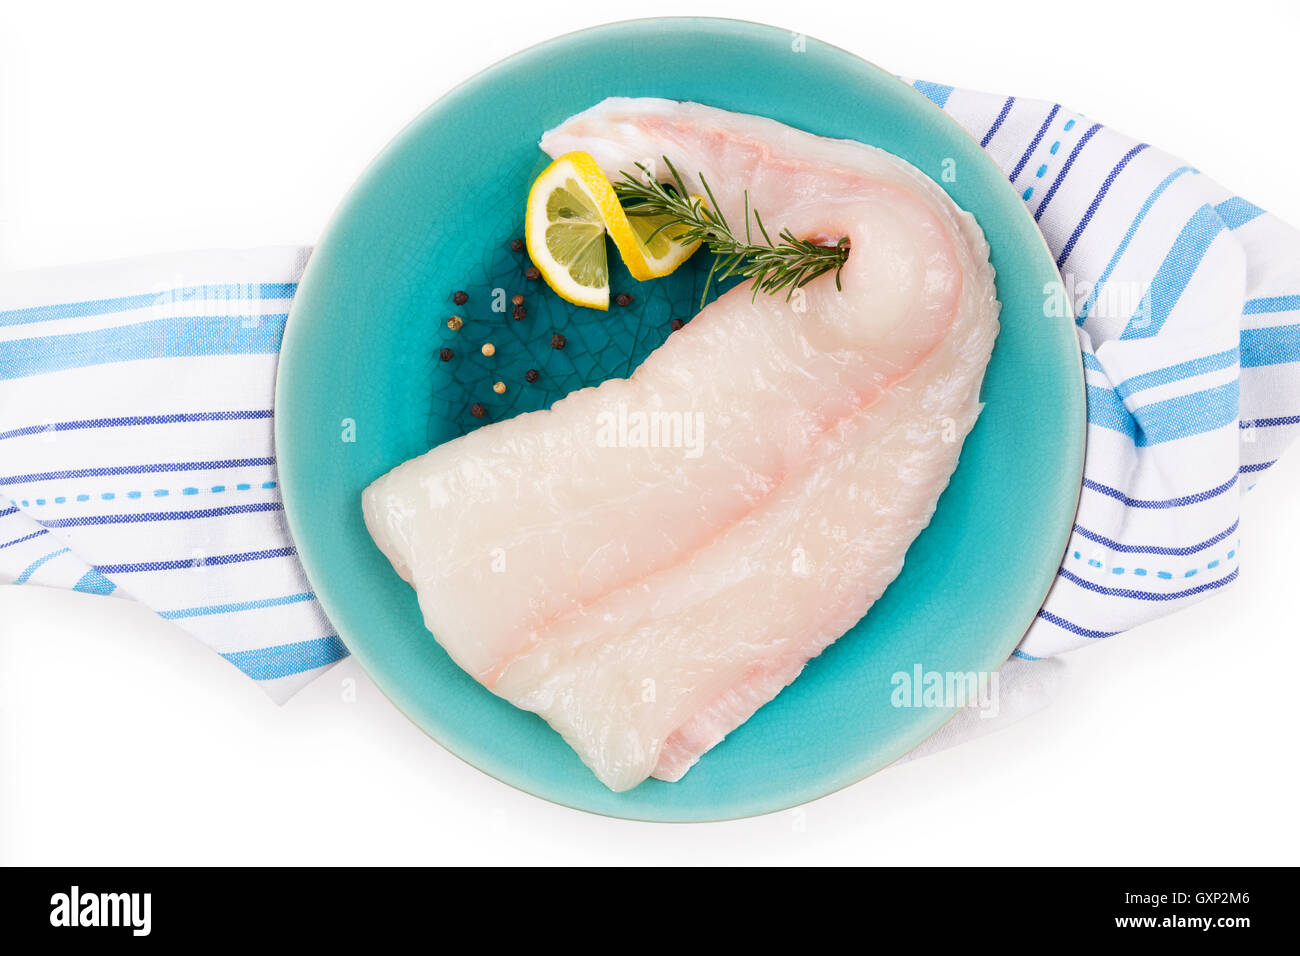 Rohe Heilbutt Filet auf Platte. Kulinarischen Meeresfrüchte kochen. Stockfoto